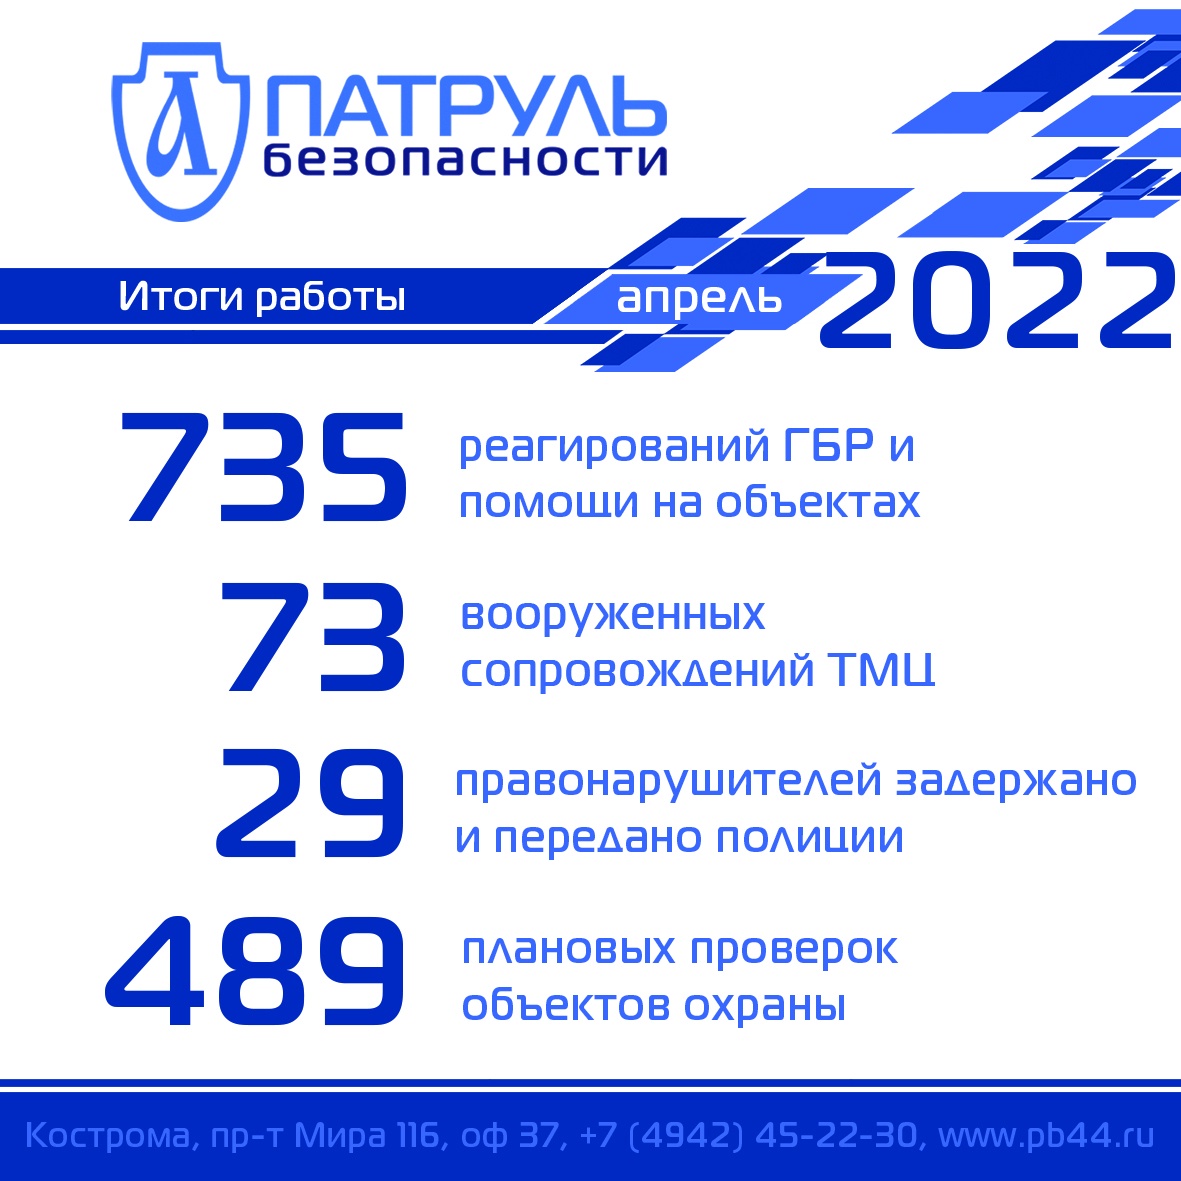 Итоги работы компании "Патруль Безопасности" за апрель 2022 года